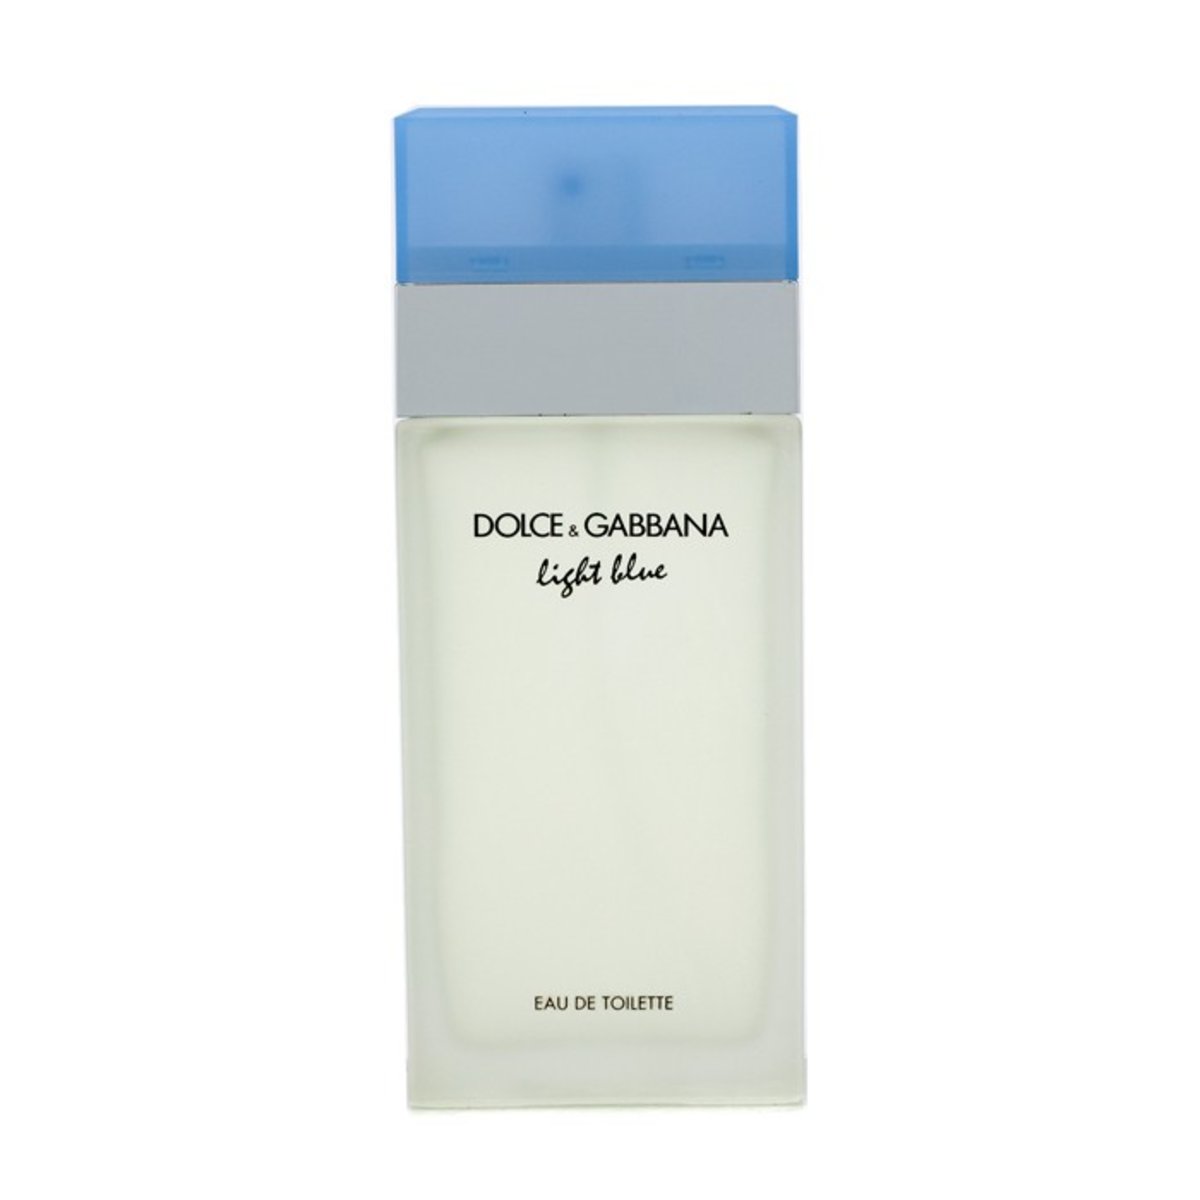 d&g light blue perfume for her